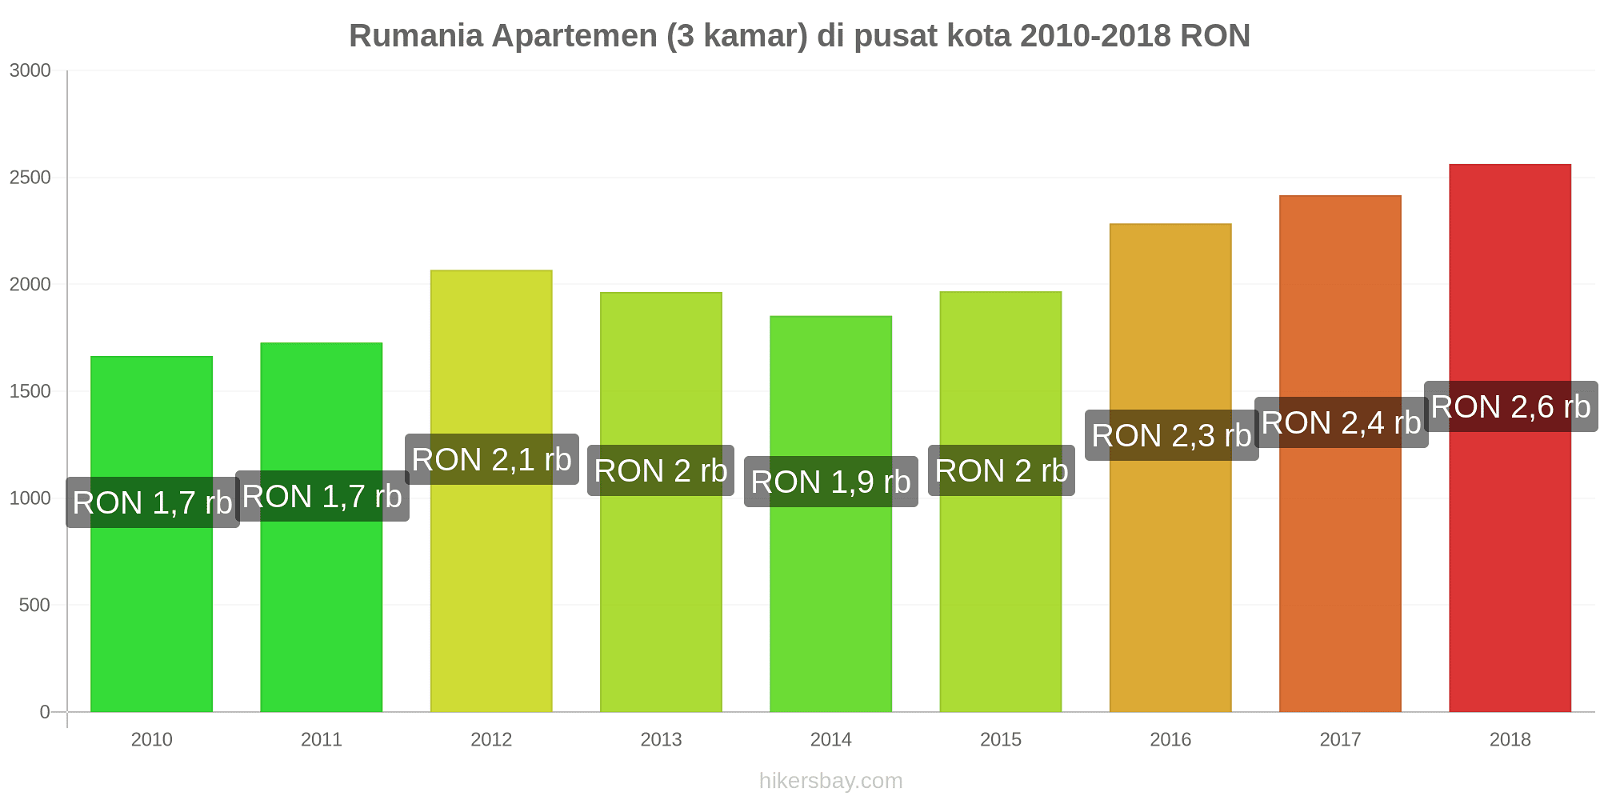 Rumania perubahan harga Apartemen (3 kamar) di pusat kota hikersbay.com